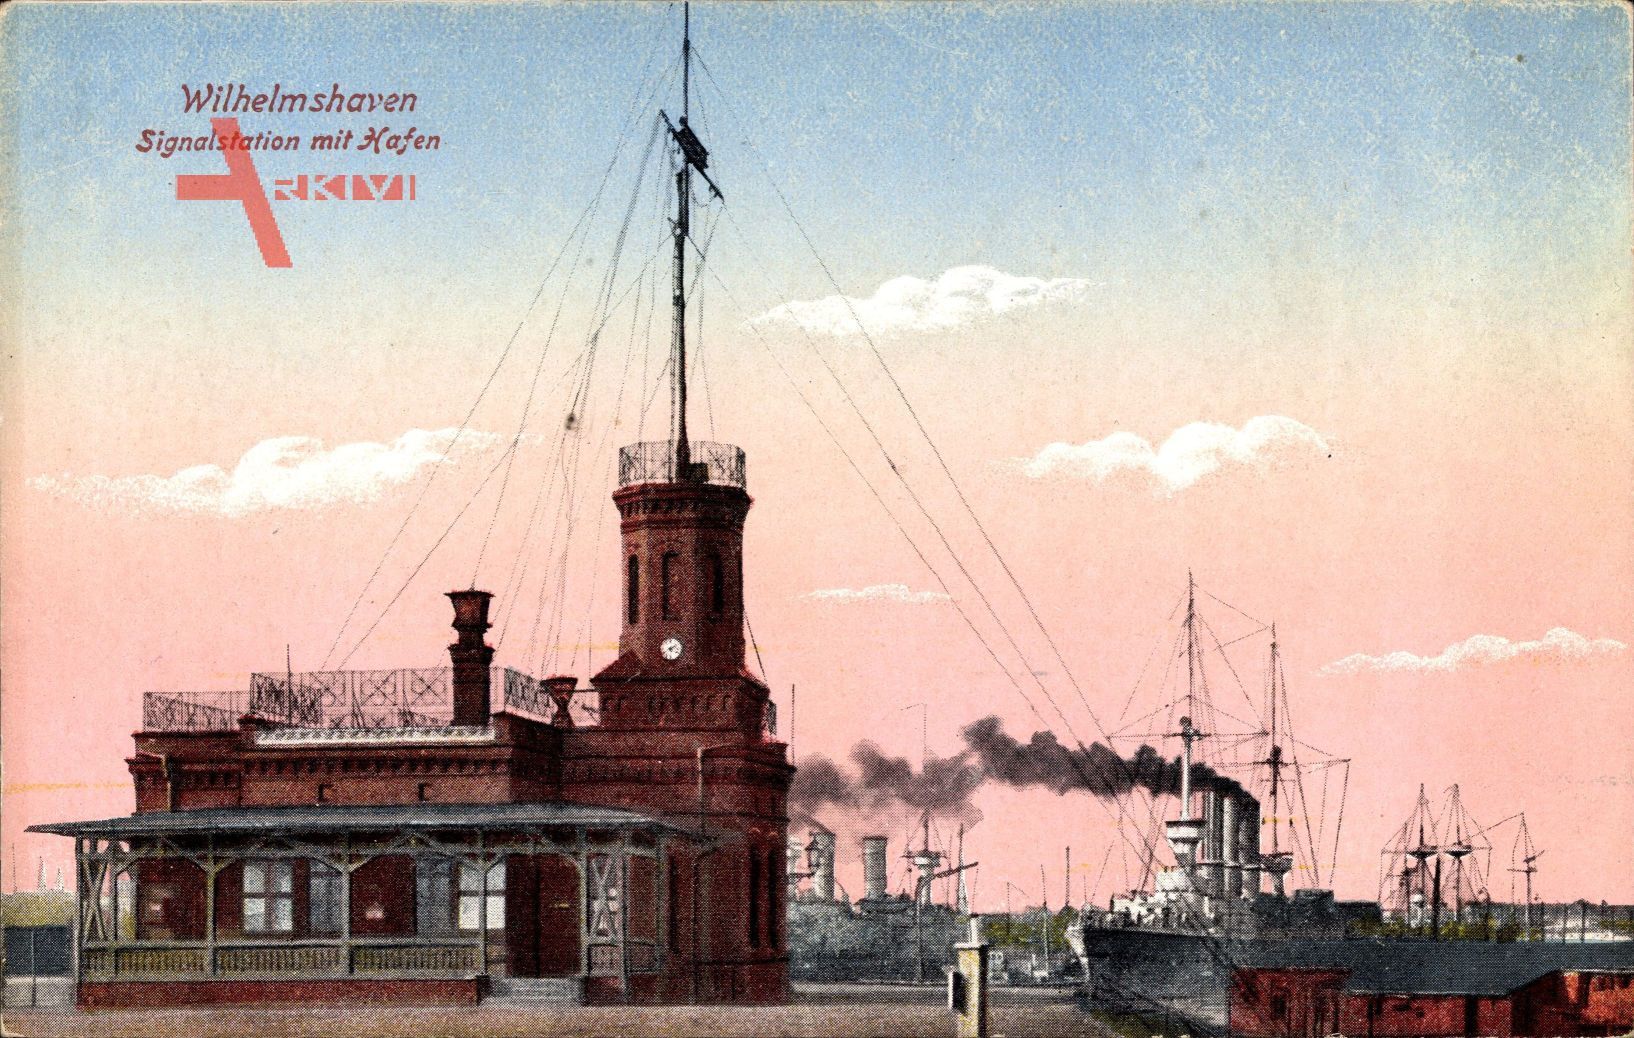 Wilhelmshaven, Signalstation mit Hafen, Schiffe, Schornstein, Rauch, Uhr